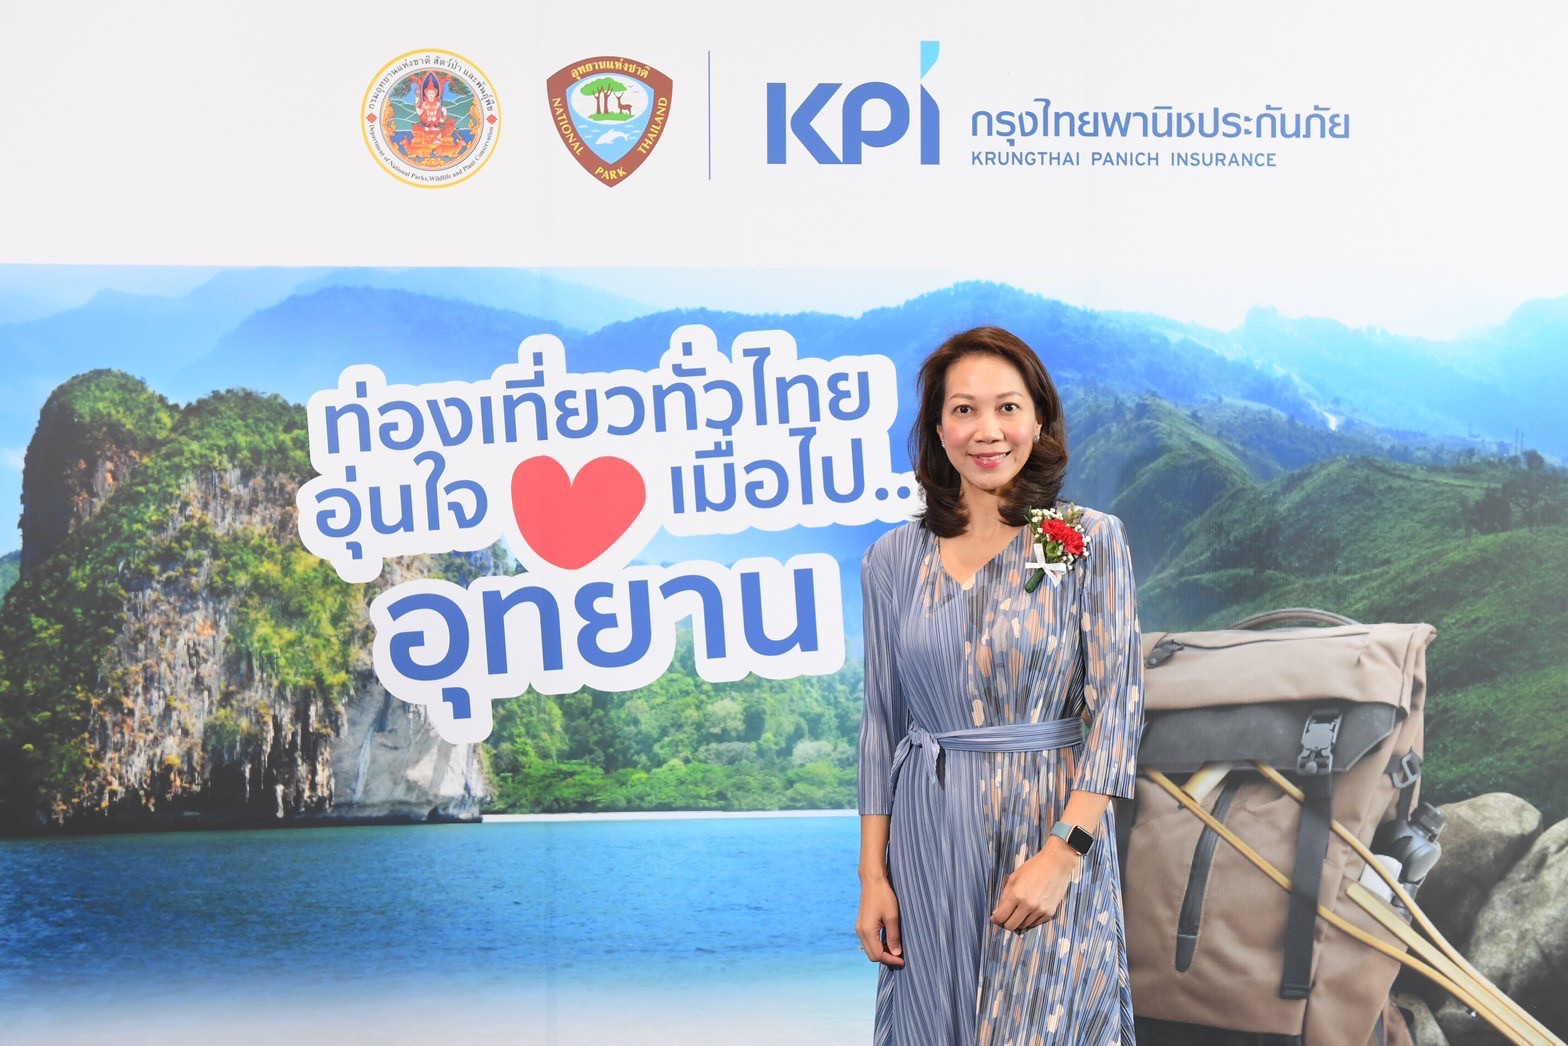 เคพีไอ จับมือกรมอุทยานแห่งชาติฯ เดินหน้า
โครงการ “ท่องเที่ยวทั่วไทย อุ่นใจเมื่อไปอุทยาน”